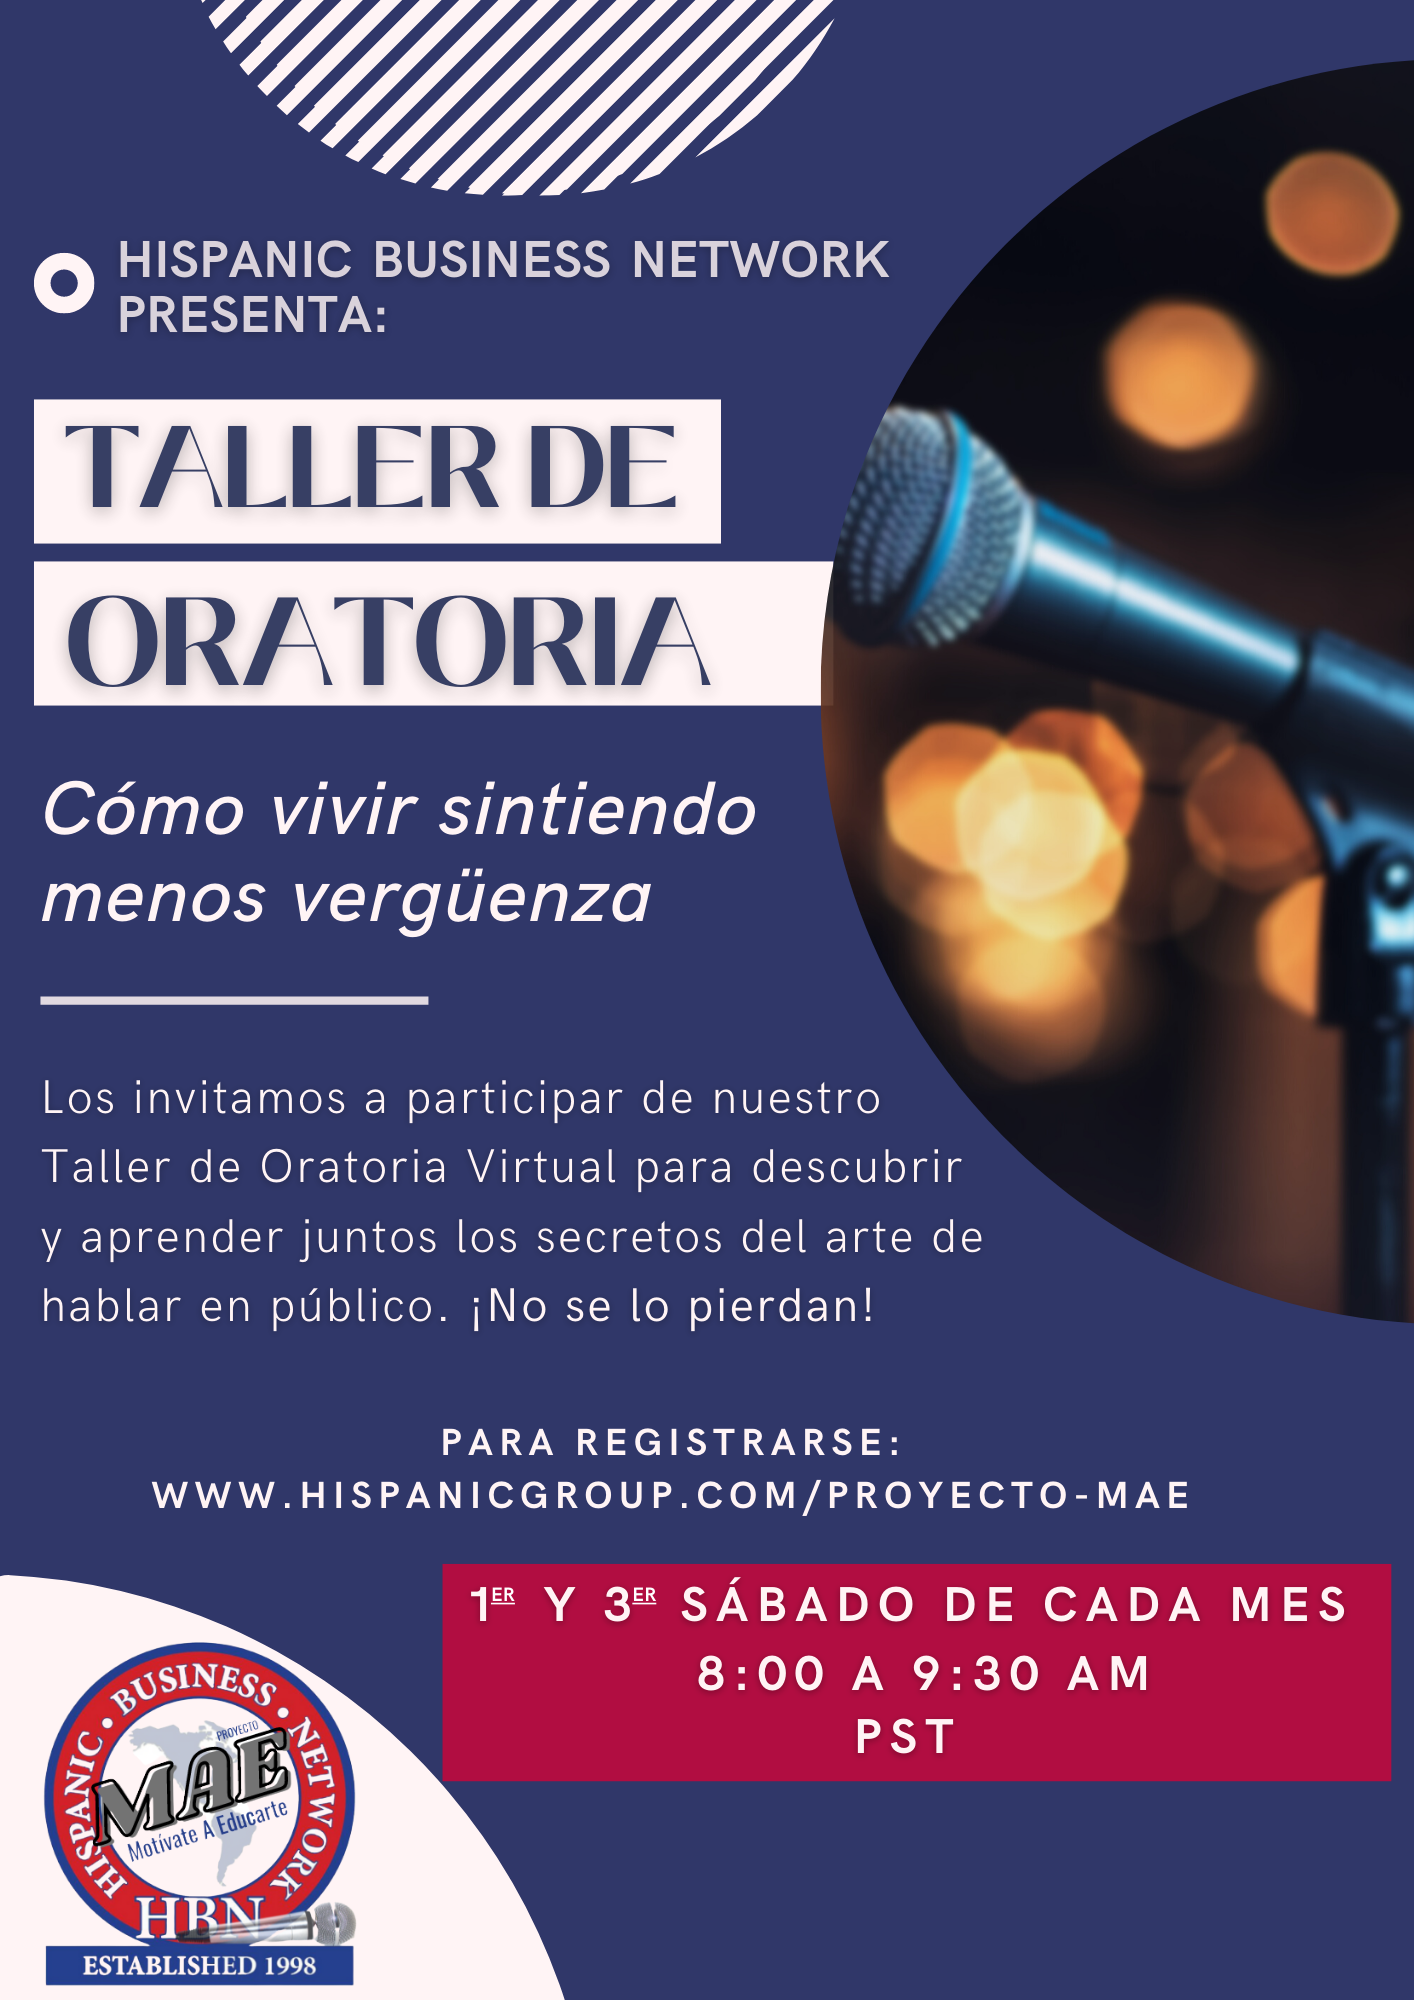 https://hispanicgroup.com/wp-content/uploads/2022/05/Taller-Oratoria-Nuevo-horario.png